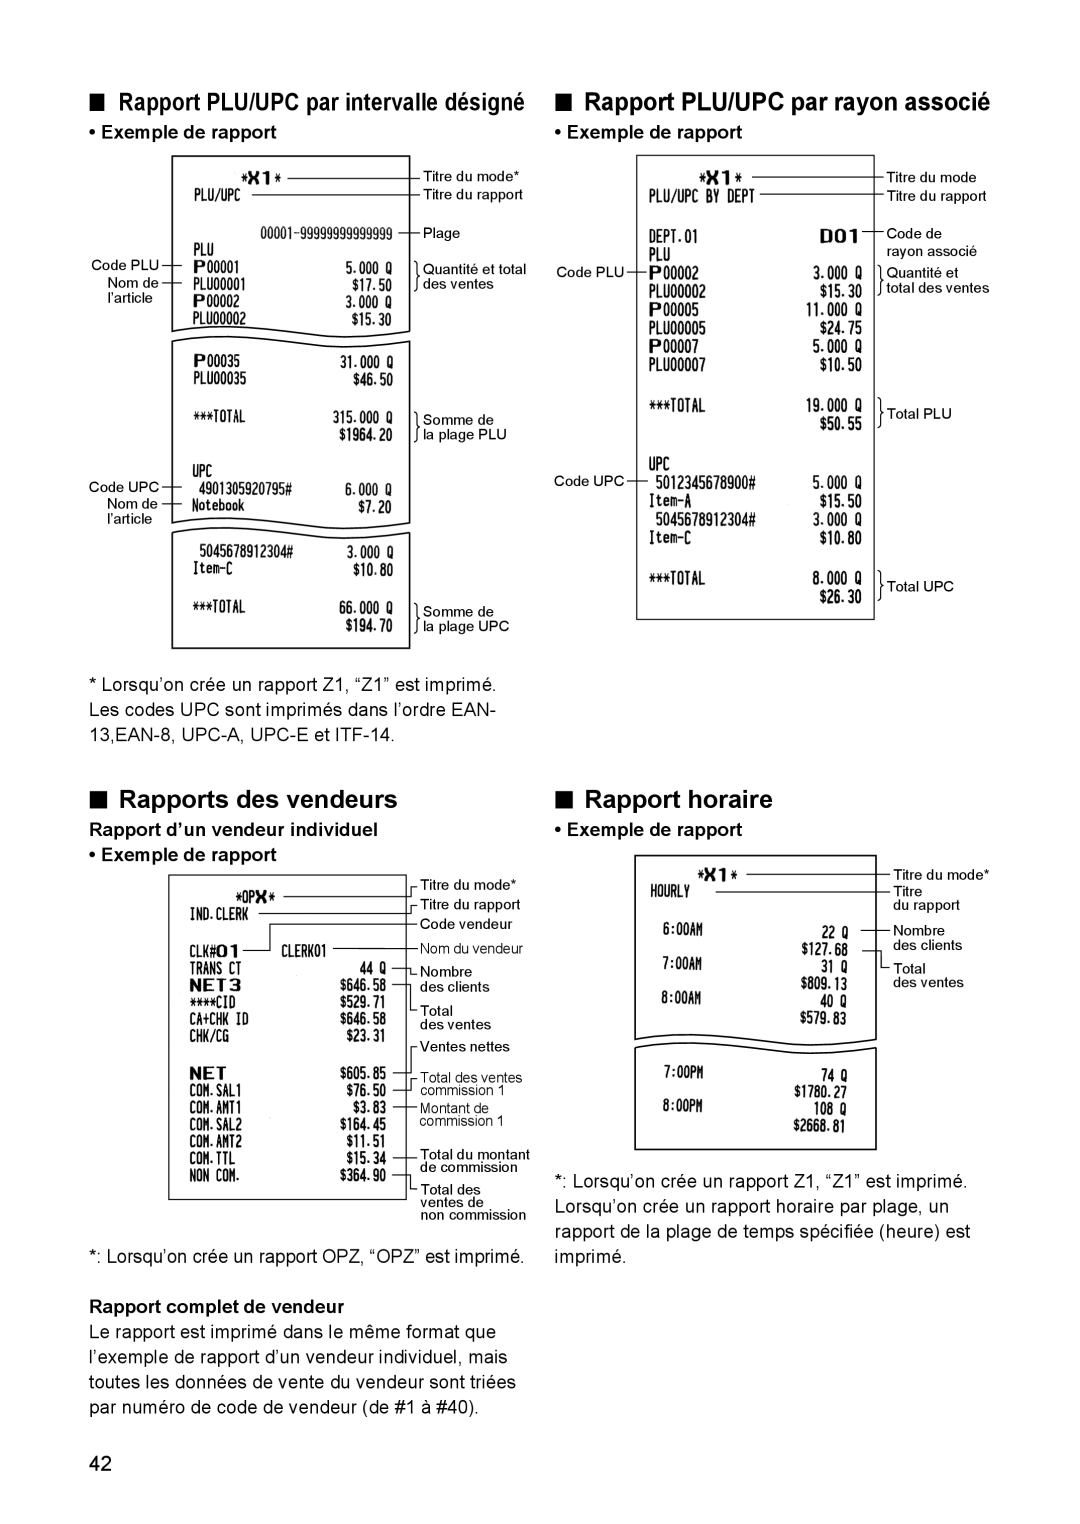 Sharp ER-A347A instruction manual Rapport PLU/UPC par rayon associé, Rapports des vendeurs, Rapport horaire 